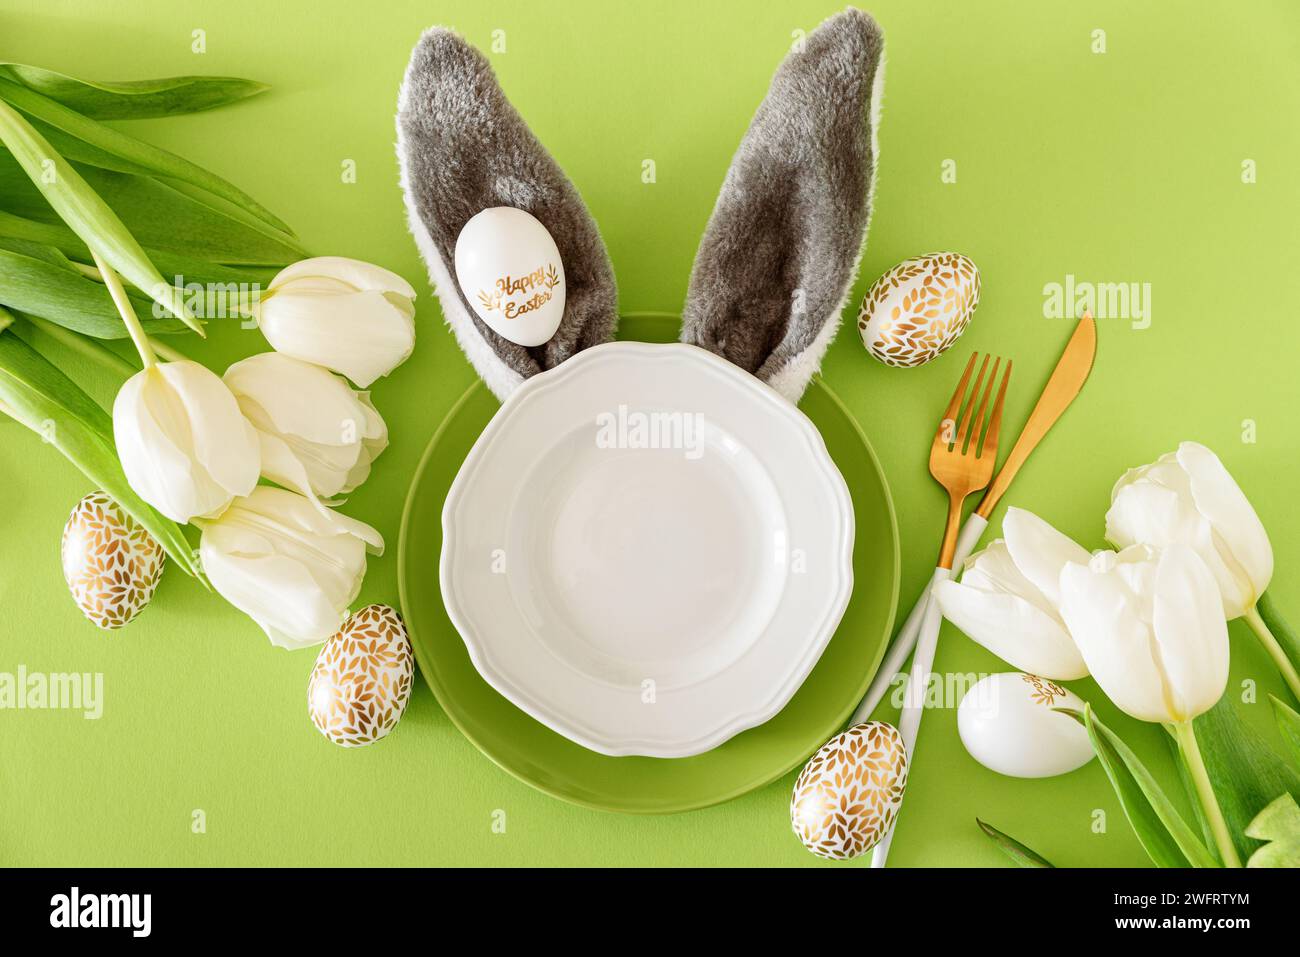 Assiette vide décorée oreilles de lapin, tulipes blanches et oeufs de Pâques sur fond vert. Concept de célébration de Pâques. Pose à plat. Vue de dessus Banque D'Images